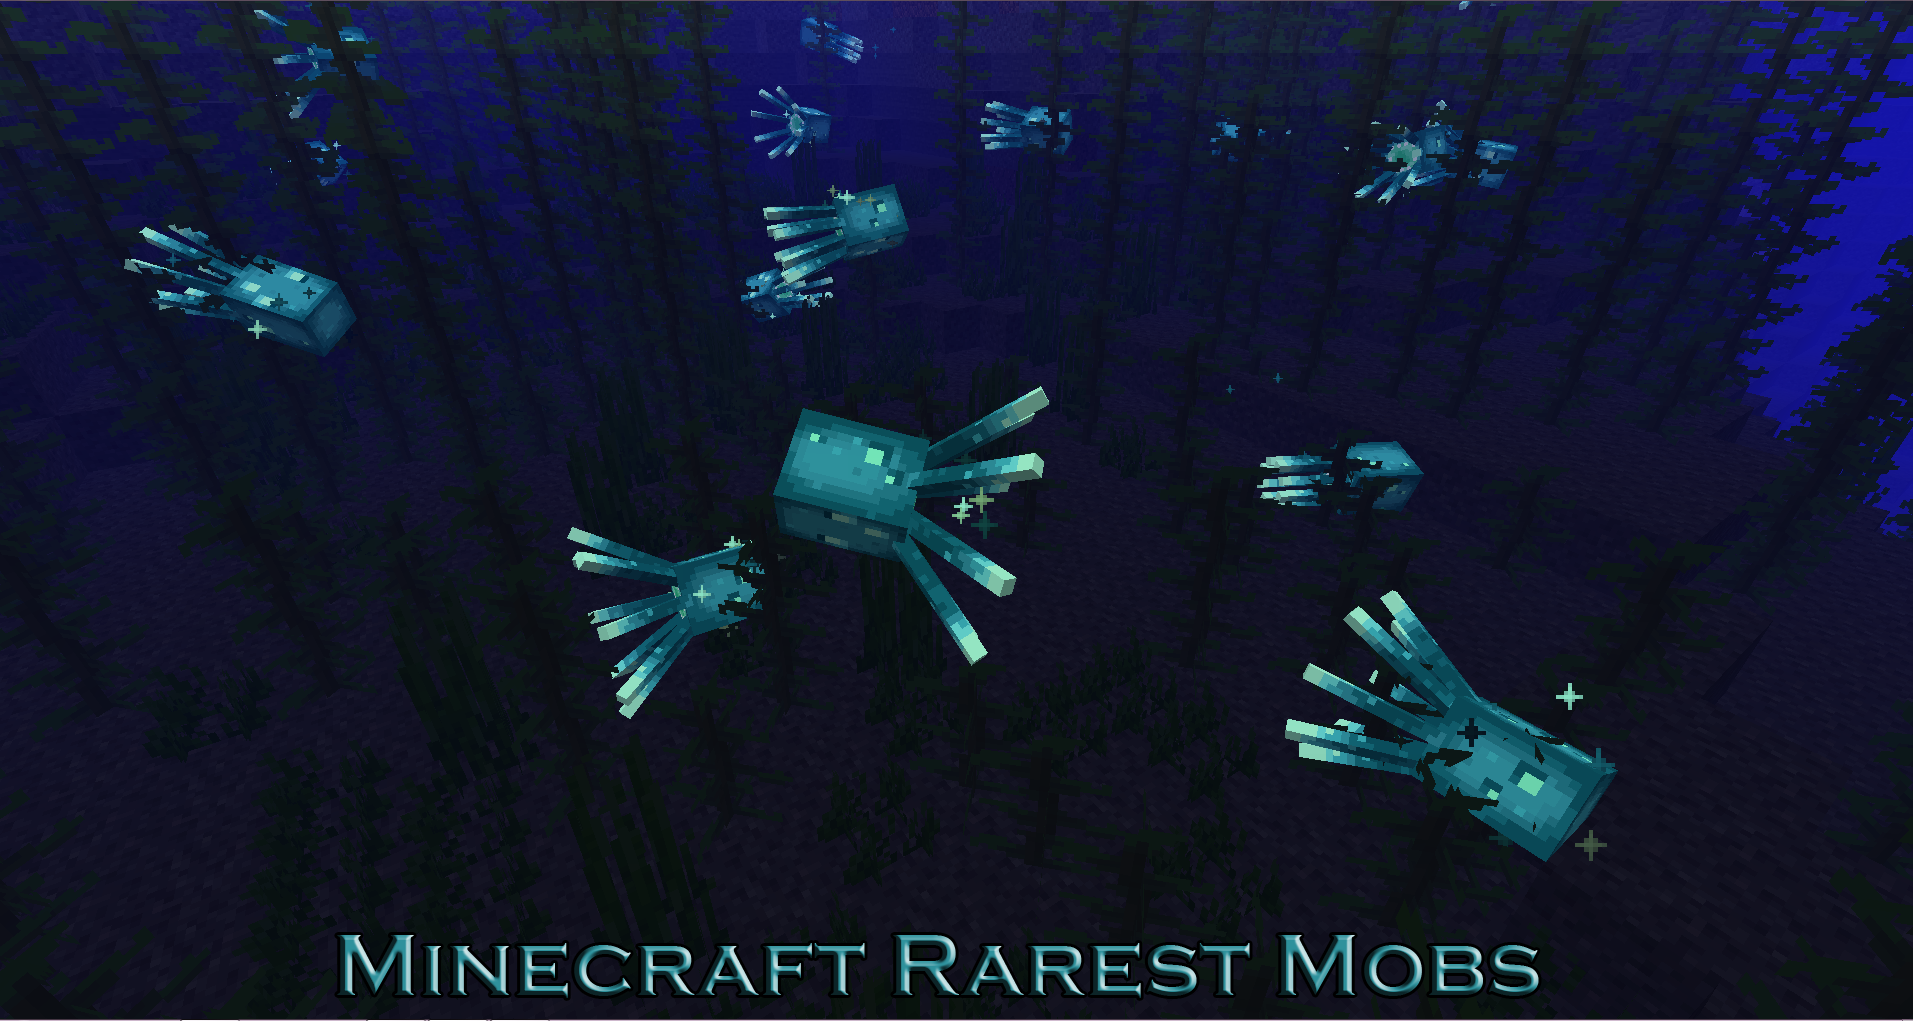 Top 5 Rarest Mobs in Minecraft